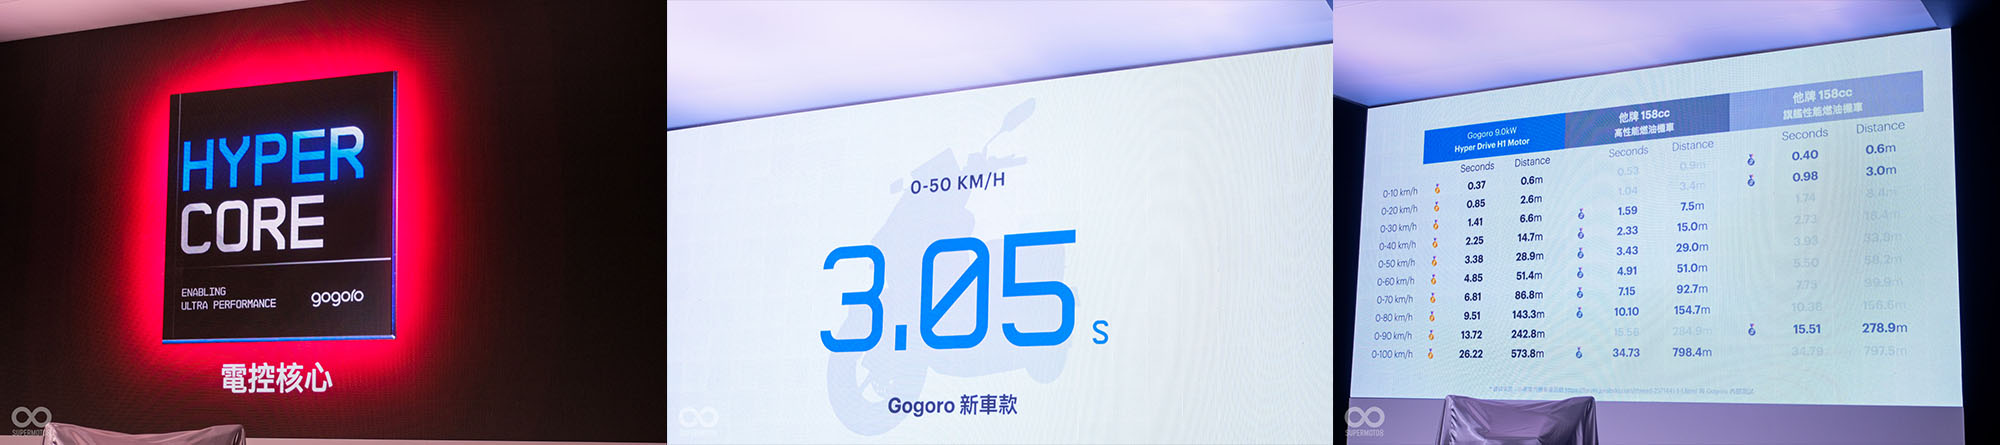 Gogoro PULSE的加速成績，甚至比前陣子剛上市的150c.c.燃油新車更強悍